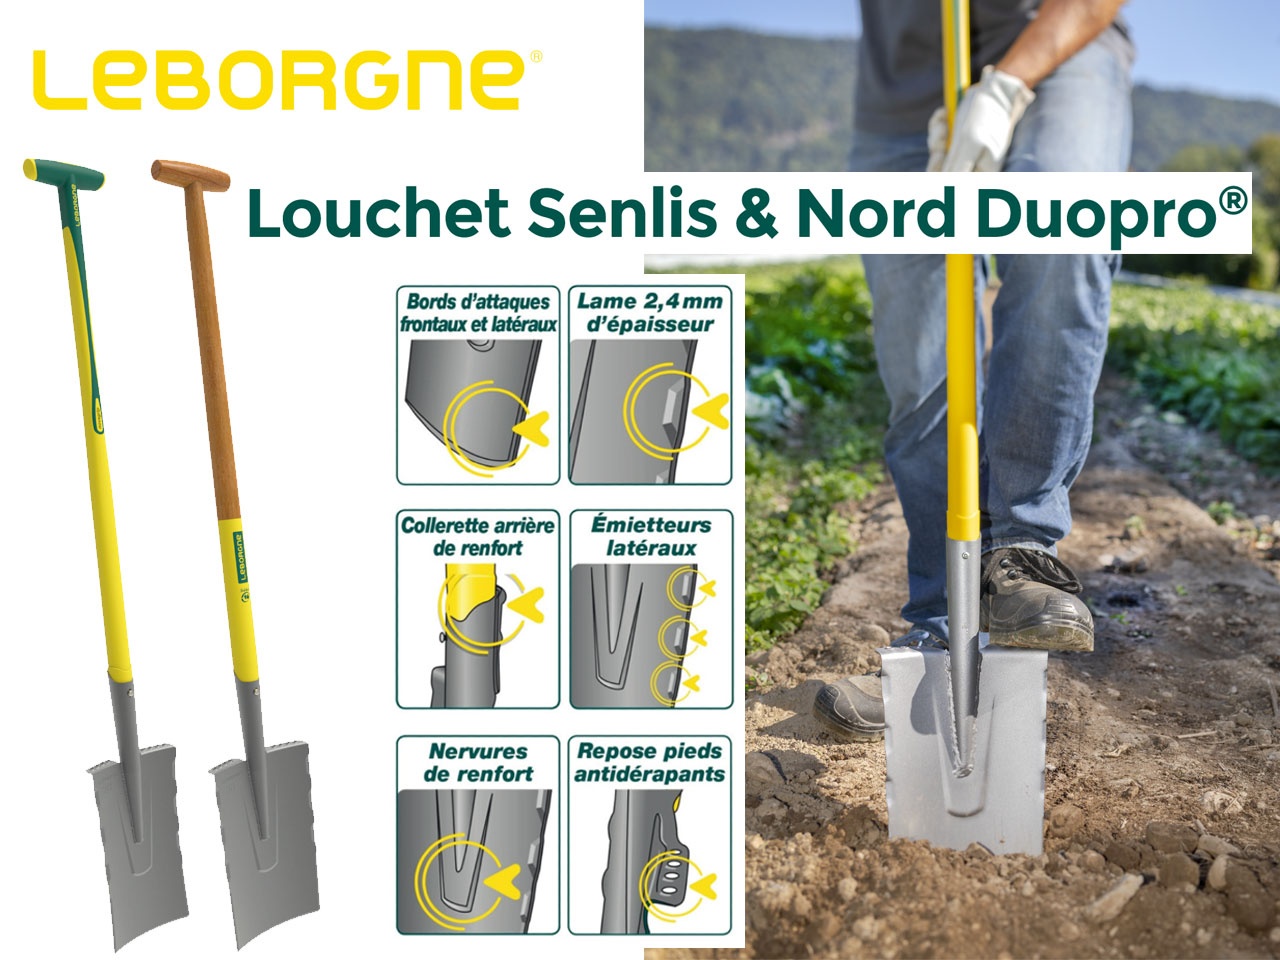 Leborgne arrive avec 2 versions nouvelles du louchet : Louchet Senlis & Nord Duopro®